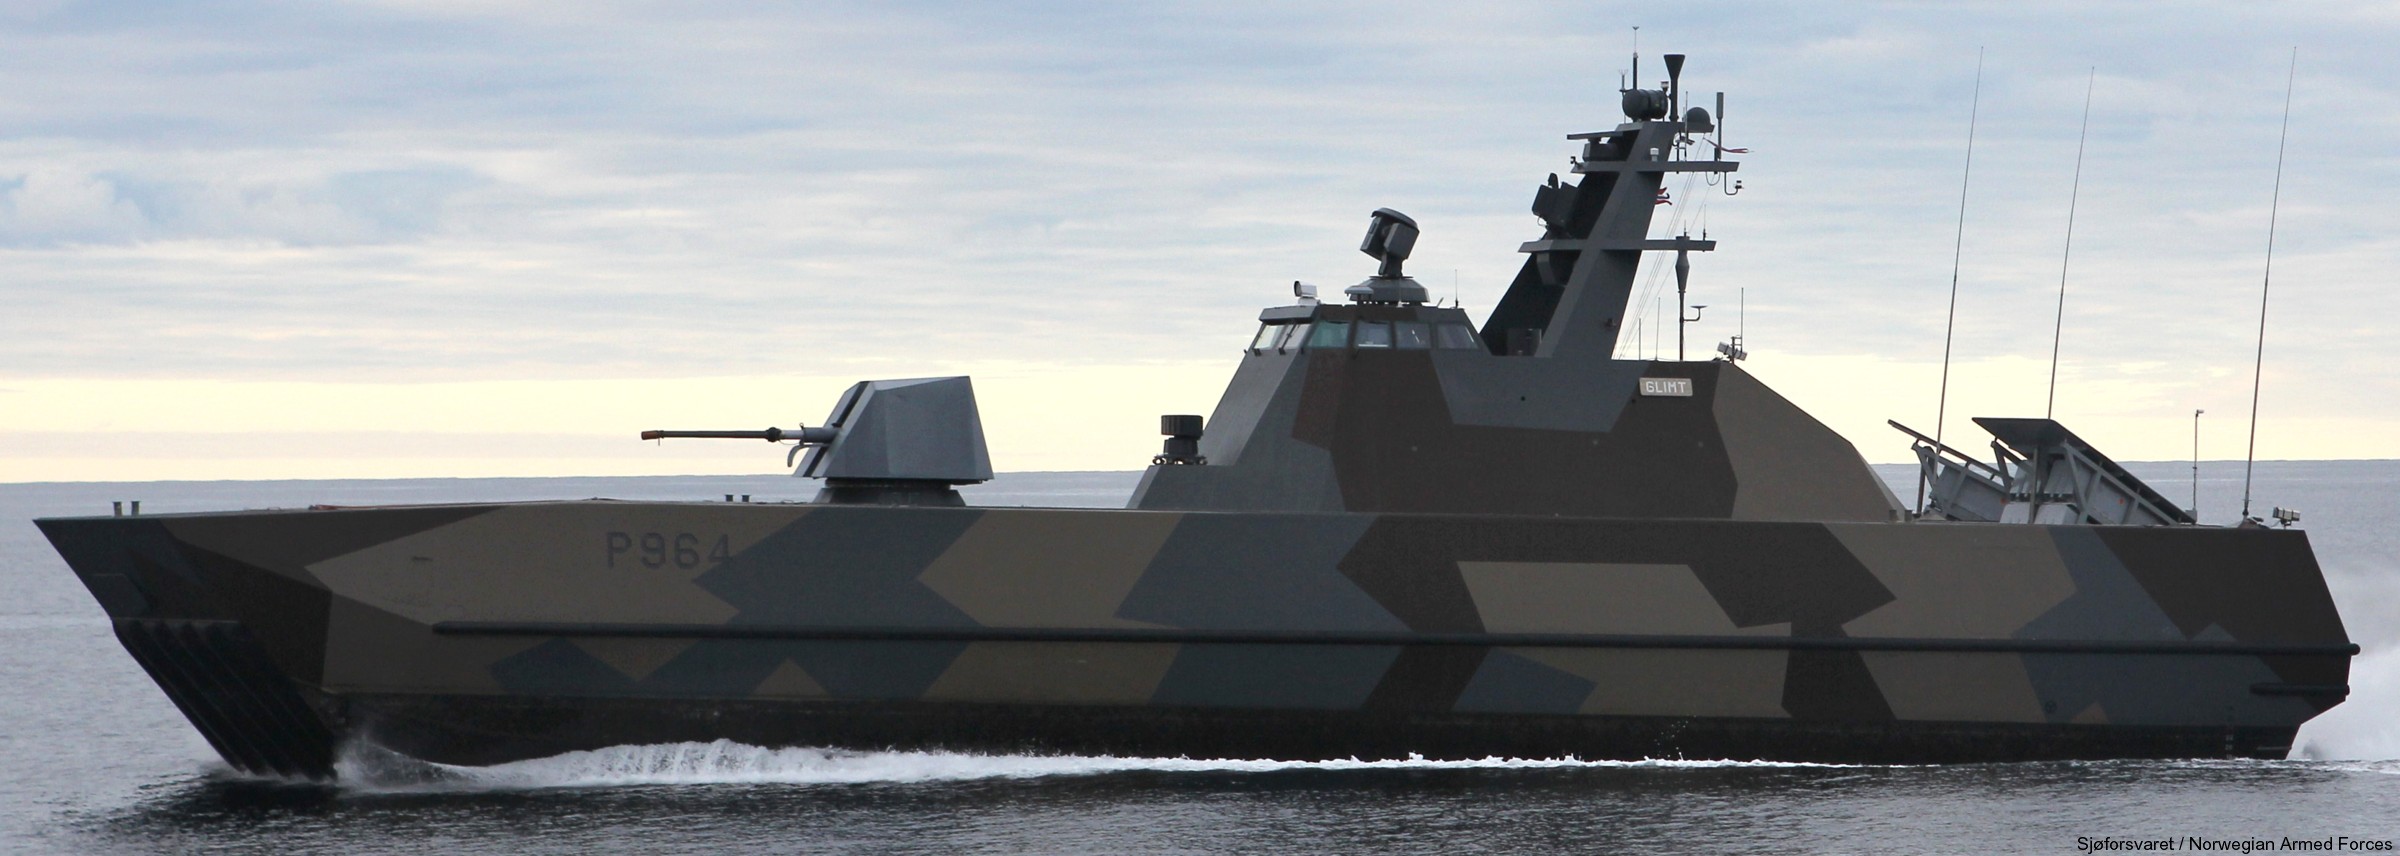 p-964 glimt knm hnoms skjold class corvette royal norwegian navy sjoforsvaret 08